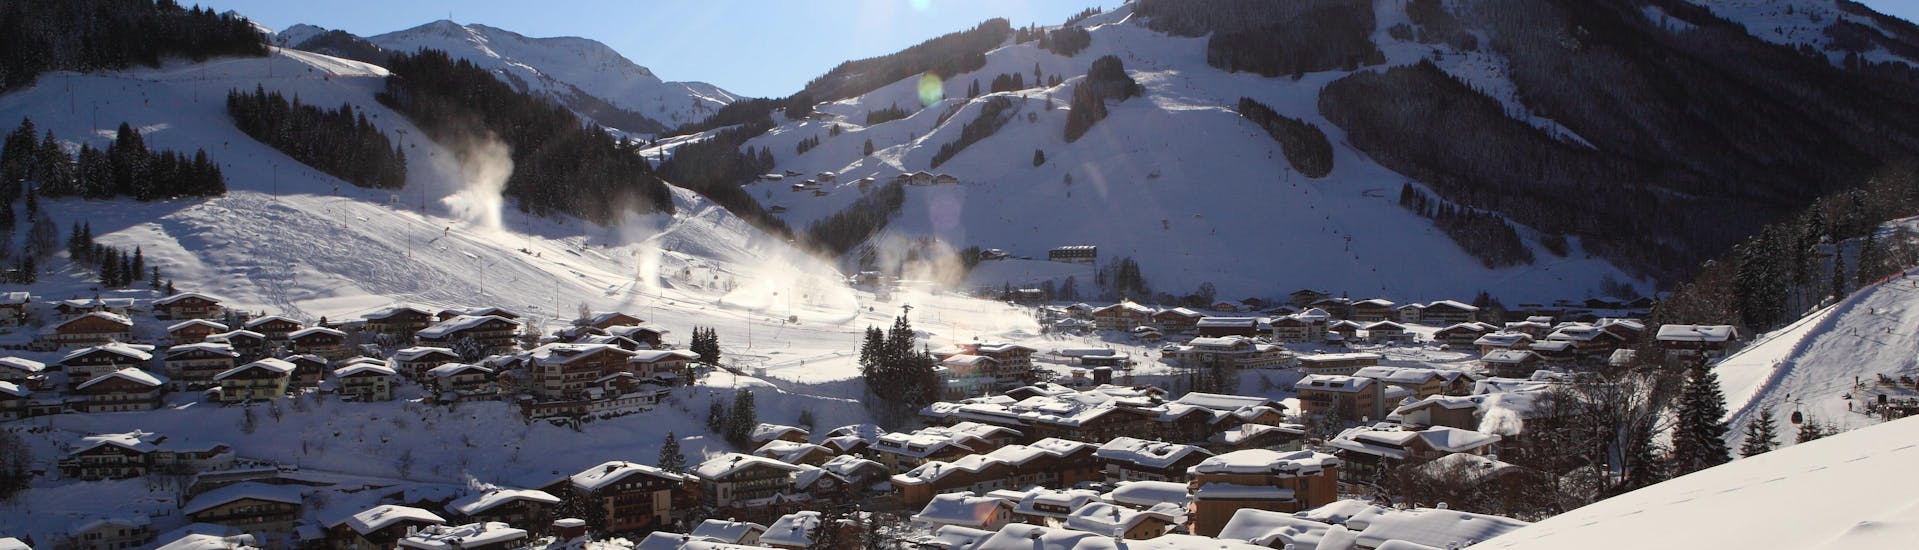 Der Skizirkus in Hinterglemm, wo die Skischulen im Winter Skikurse anbieten. 